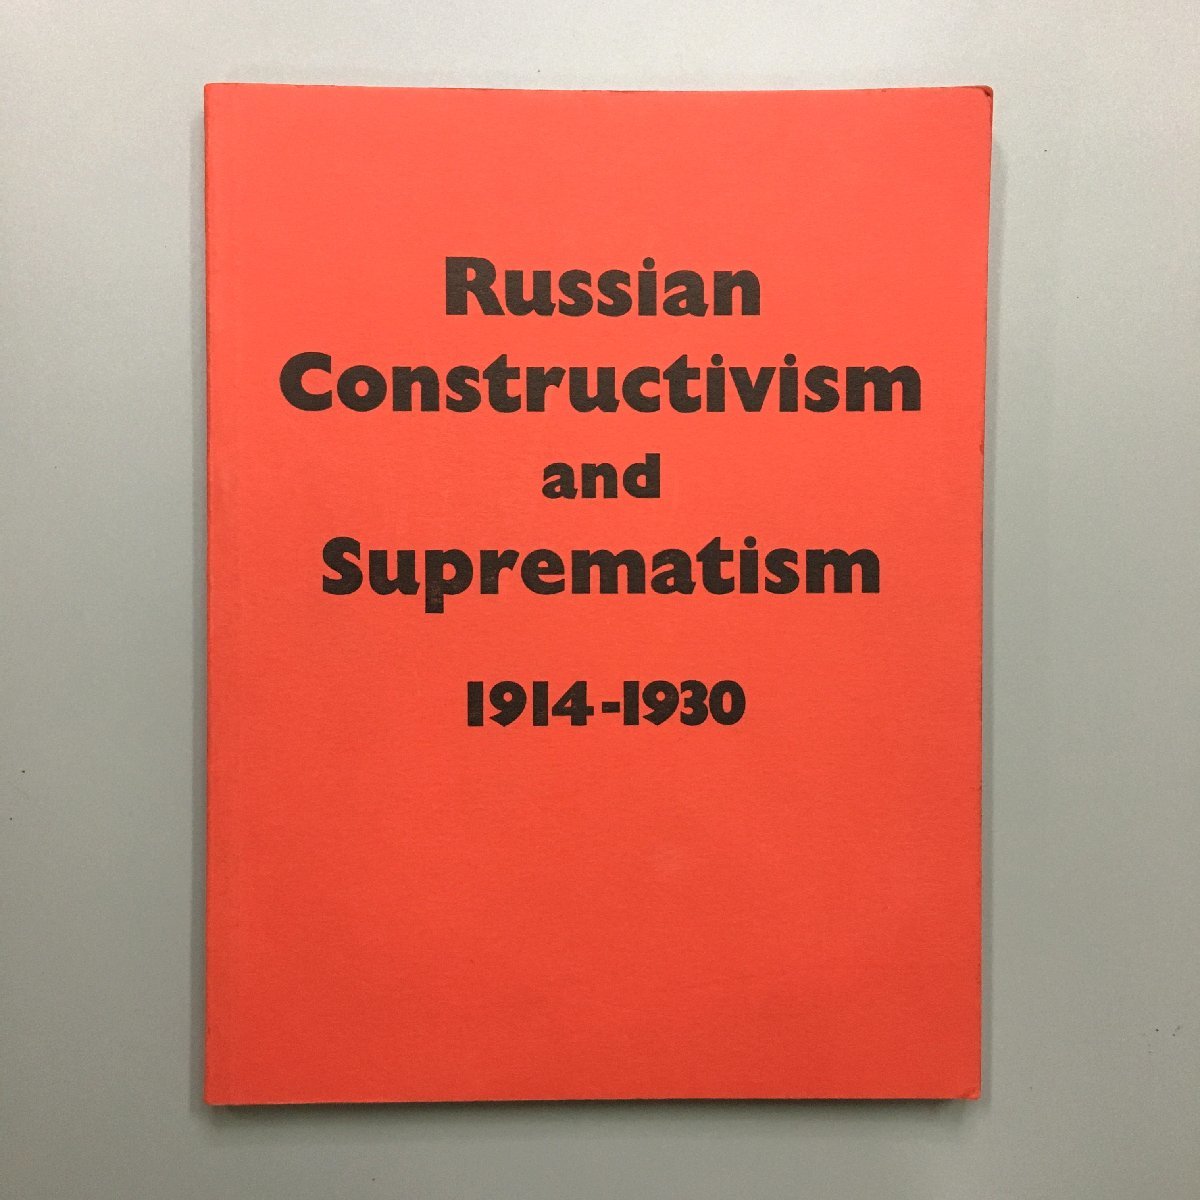 रूसी रचनावाद और सर्वोच्चतावाद 1914-1930 रूसी रचनावाद और सर्वोच्चतावाद की प्रदर्शनी सूची, सूची, कला पुस्तक, कार्यों का संग्रह, विदेशी पुस्तकें, चित्रकारी, कला पुस्तक, संग्रह, कला पुस्तक